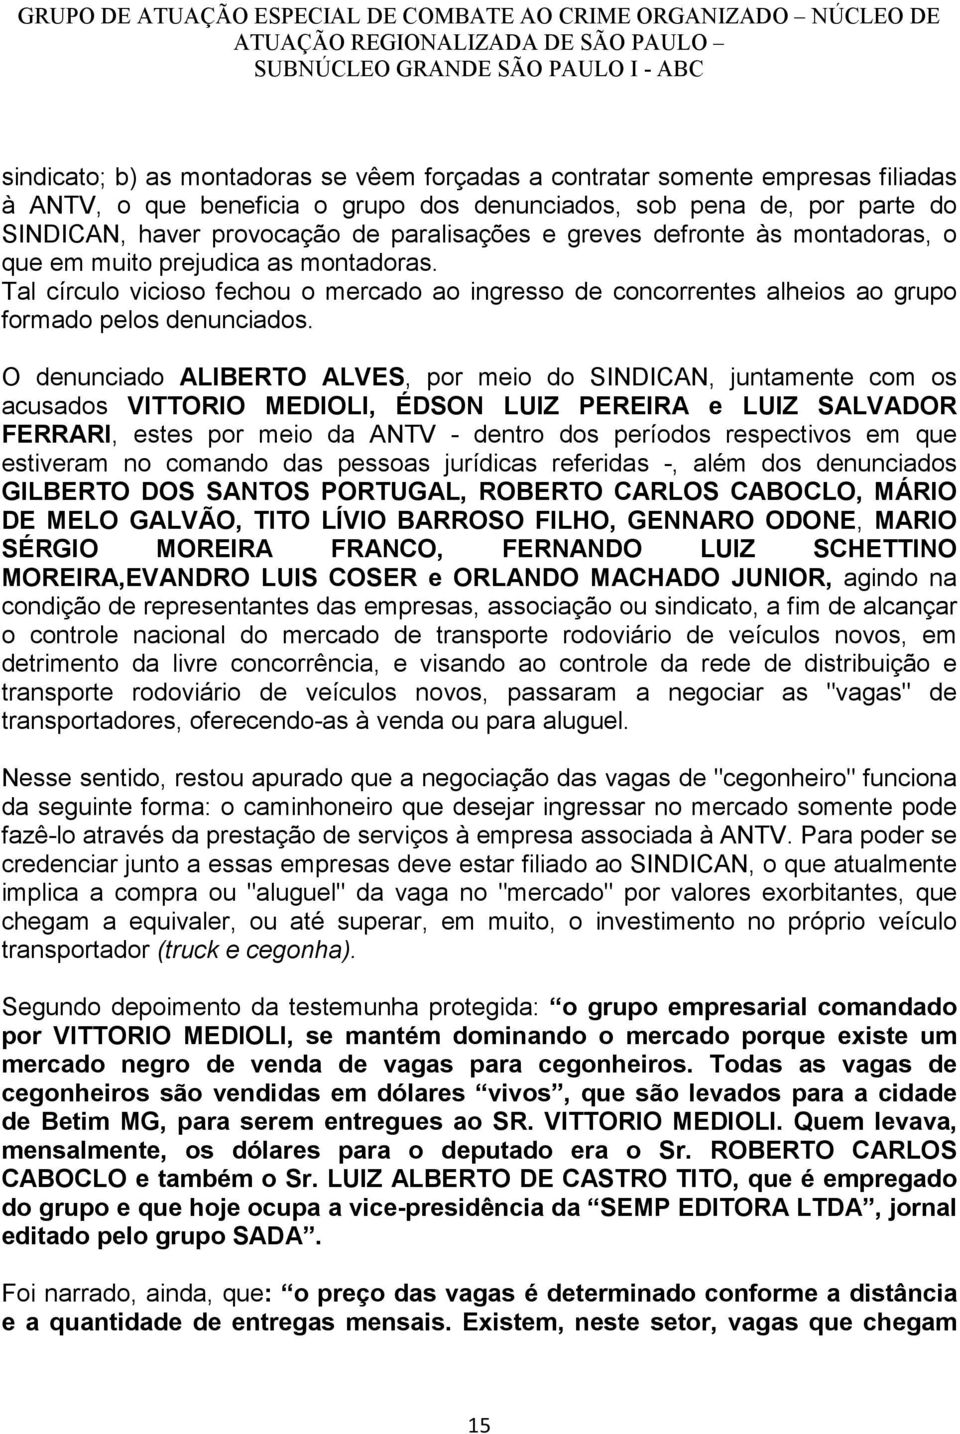 O denunciado ALIBERTO ALVES, por meio do SINDICAN, juntamente com os acusados VITTORIO MEDIOLI, ÉDSON LUIZ PEREIRA e LUIZ SALVADOR FERRARI, estes por meio da ANTV - dentro dos períodos respectivos em